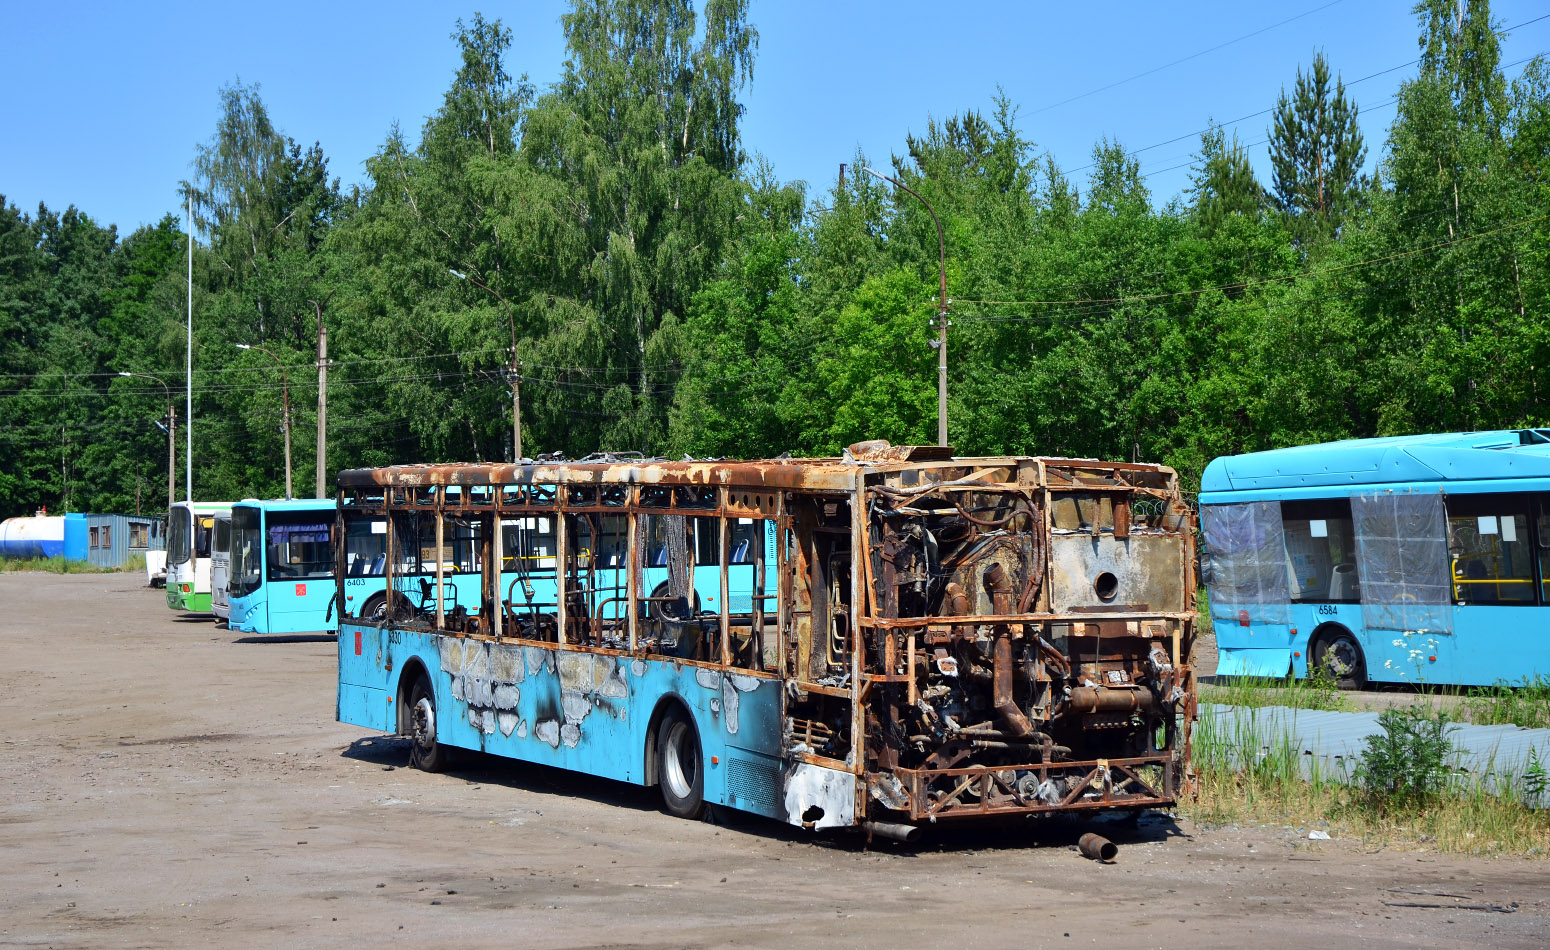 Szentpétervár, Volgabus-5270.G2 (LNG) sz.: 6330